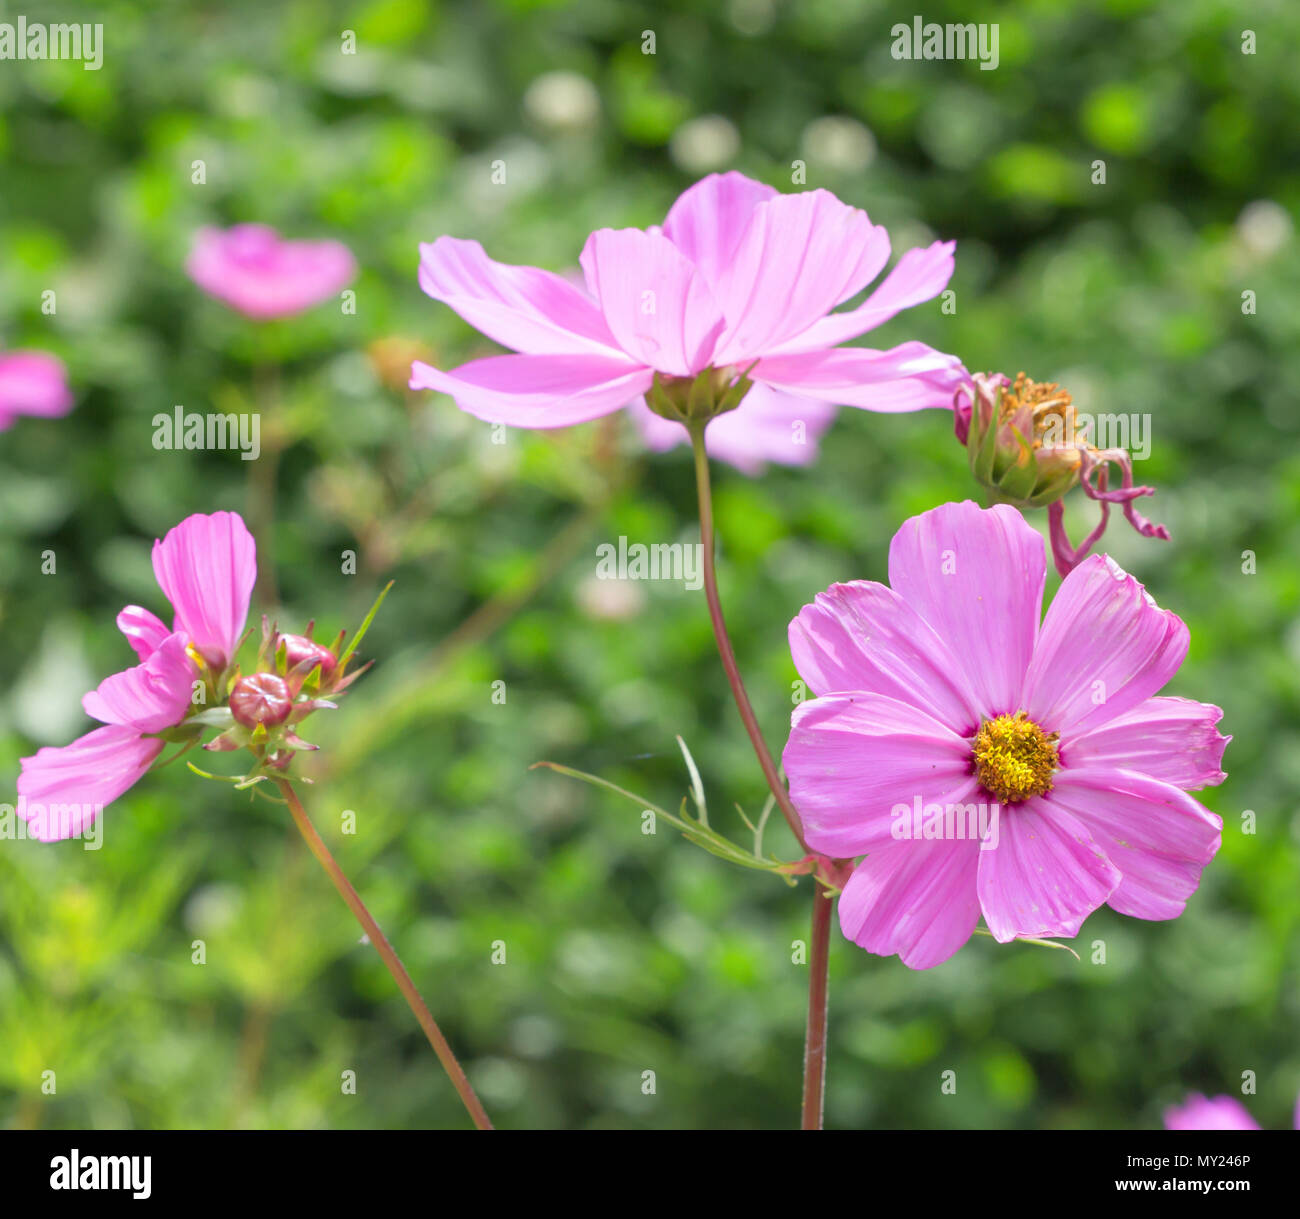 Blume Kosmos vor dem Hintergrund der blühenden Blumen. Frühling rosa Blume  Stockfotografie - Alamy